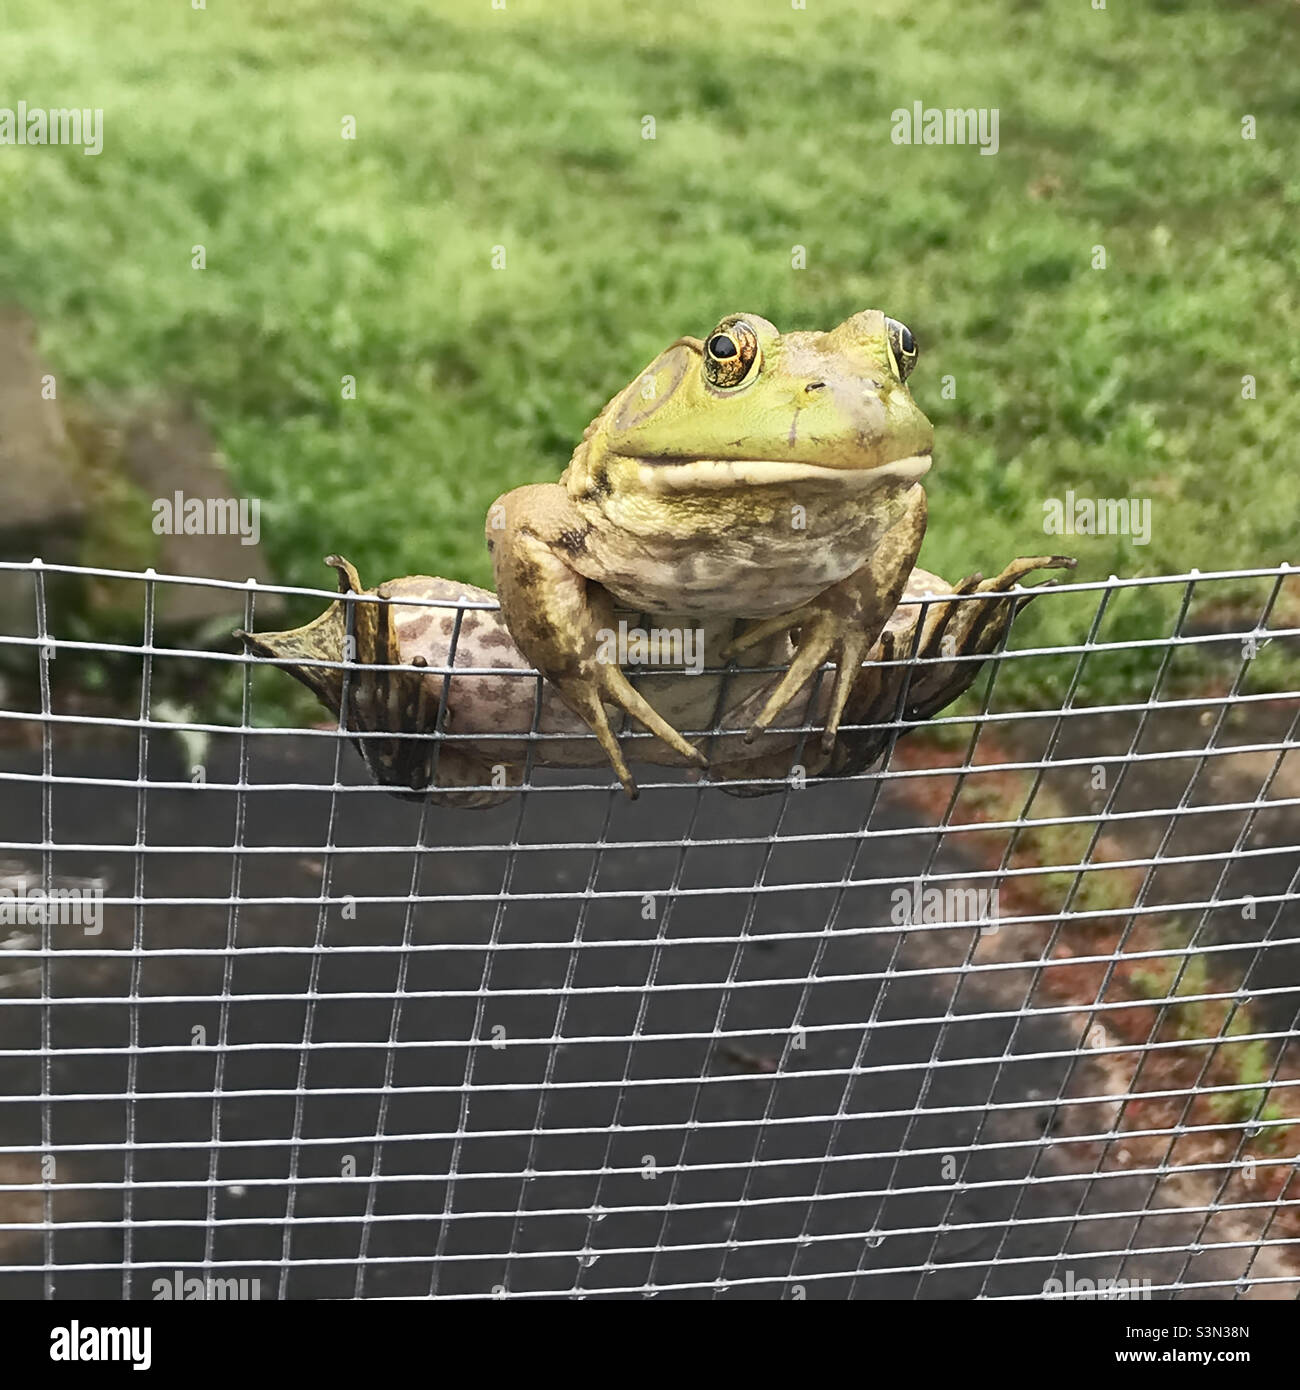 Une grenouille américaine mâle est perchée sur une clôture en chaînette et regarde la caméra. Banque D'Images